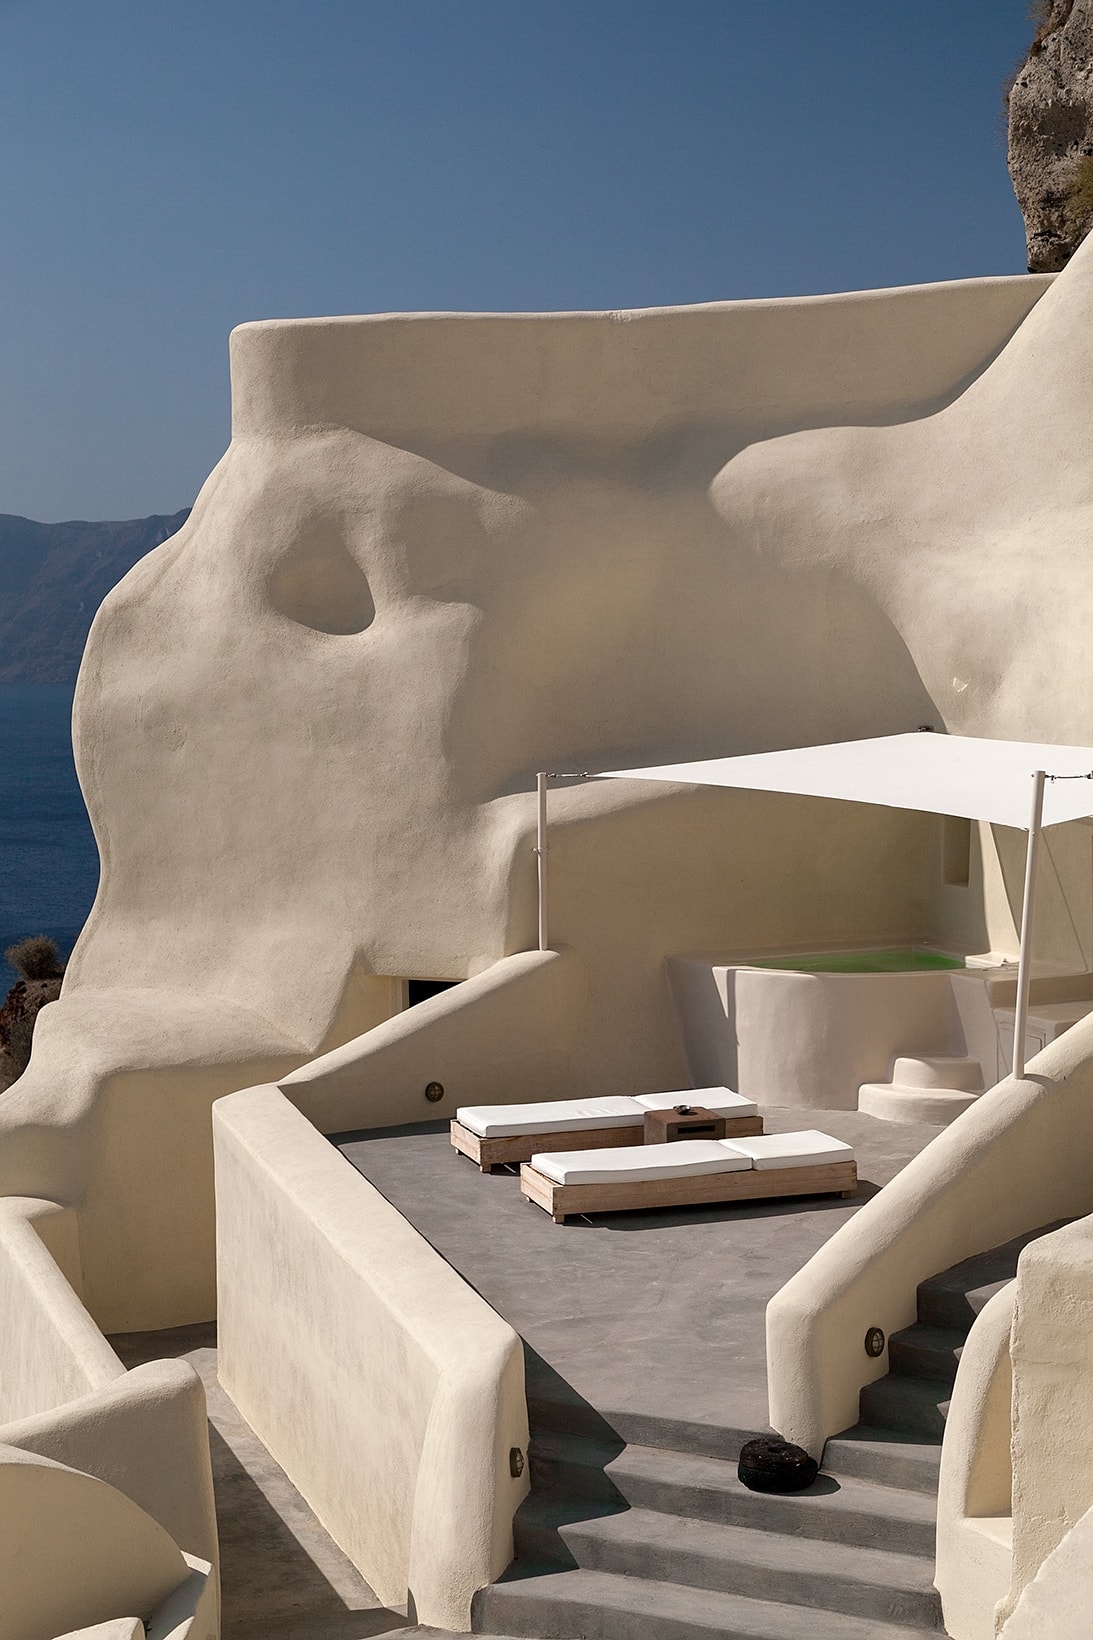 Mystique Hotel Santorini Greece Travel Interior Villas Suites